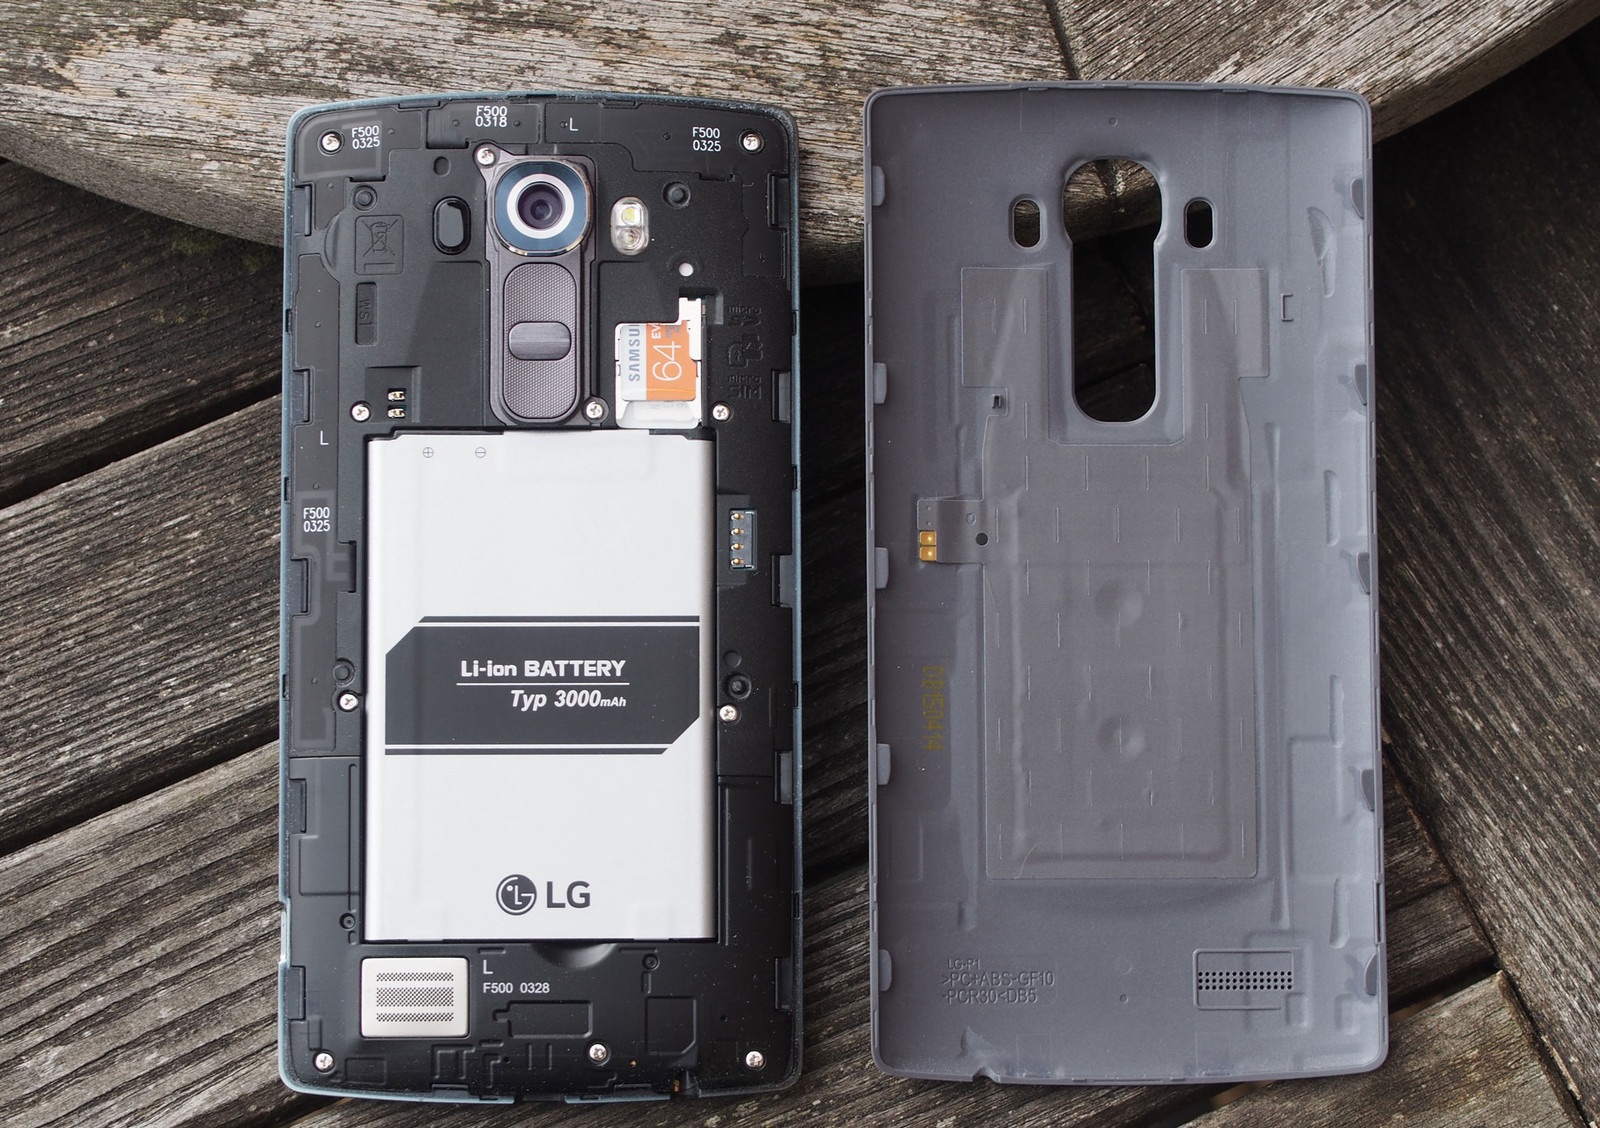 ТОП 12 смартфонов с возможностью видеозаписи в формате 4K - LG G4